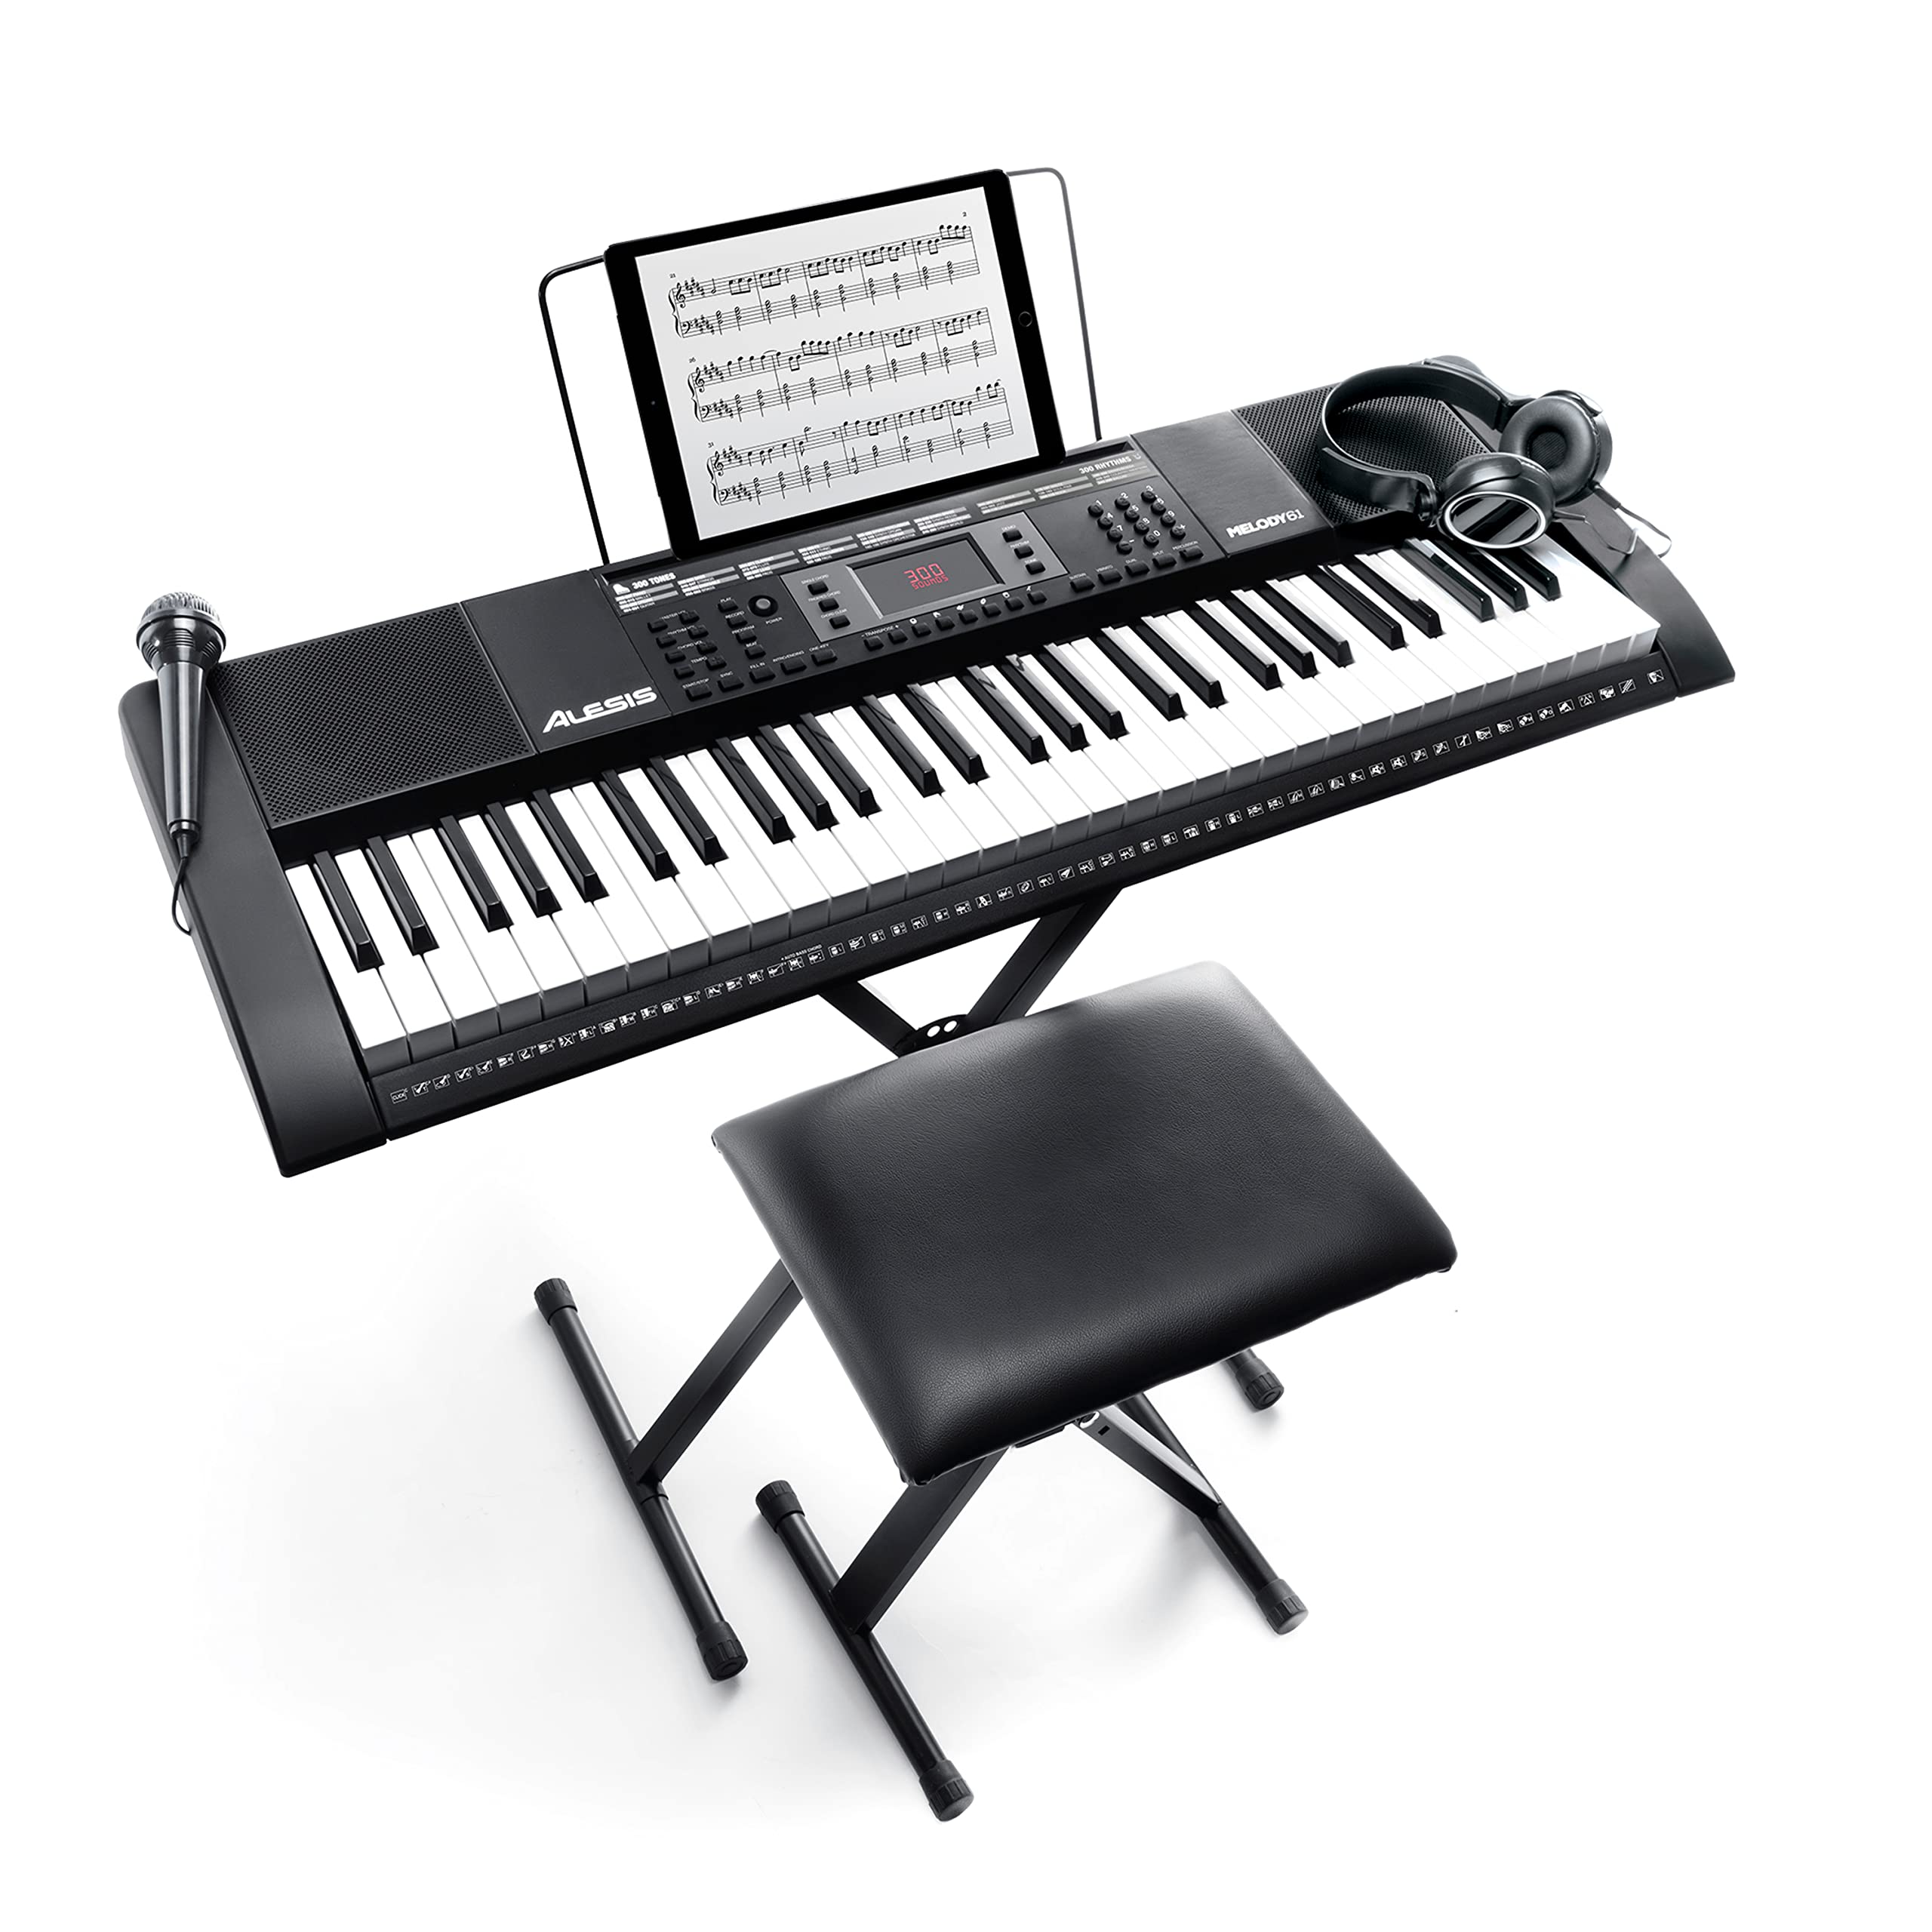 Đam mê âm nhạc và muốn tìm kiếm một chiếc đàn điện tử chuyên nghiệp để tập luyện? Alesis Melody 61 MKII Electronic Keyboard sẽ giúp bạn thỏa mãn khát khao sáng tạo với số lượng âm thanh tuyệt vời. Hình ảnh sẽ khiến bạn thích thú.